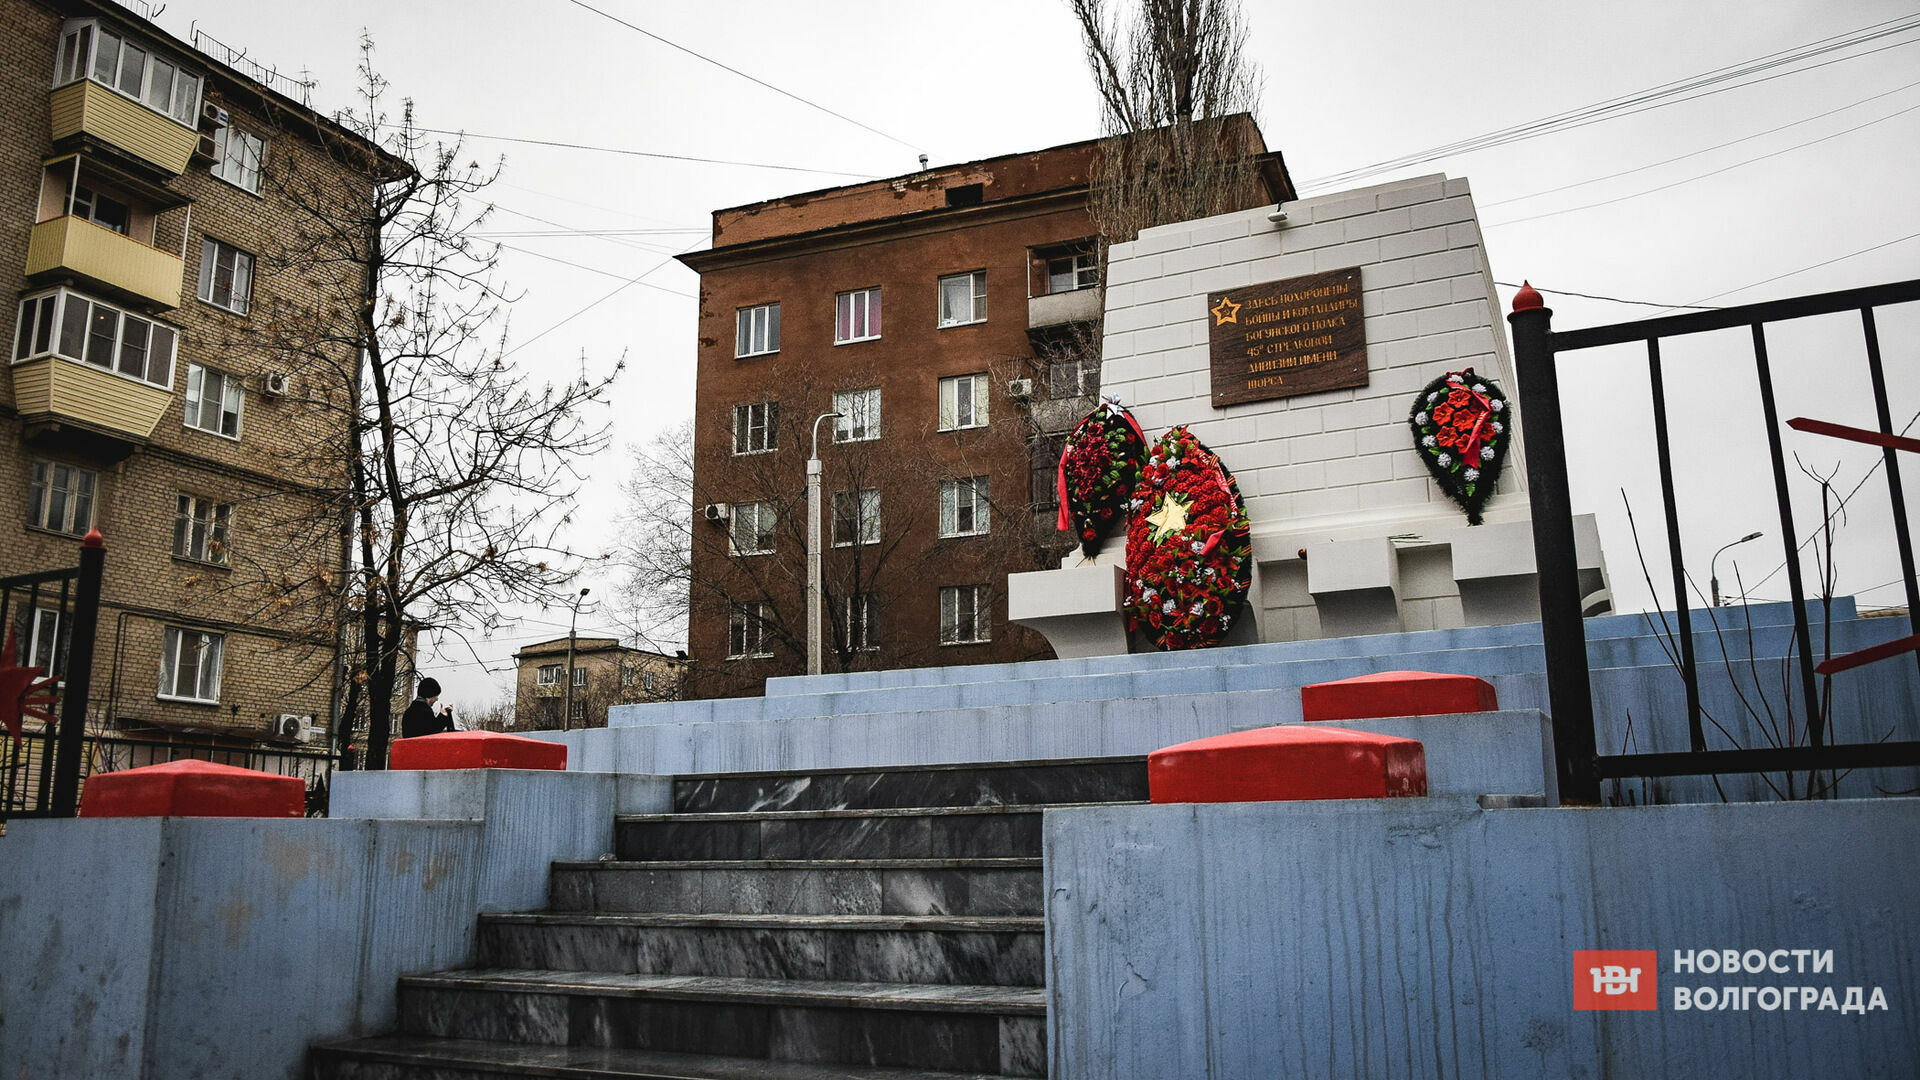 «Стыдно за халтуру»: братскую могилу в Волгограде отреставрировали некачественно